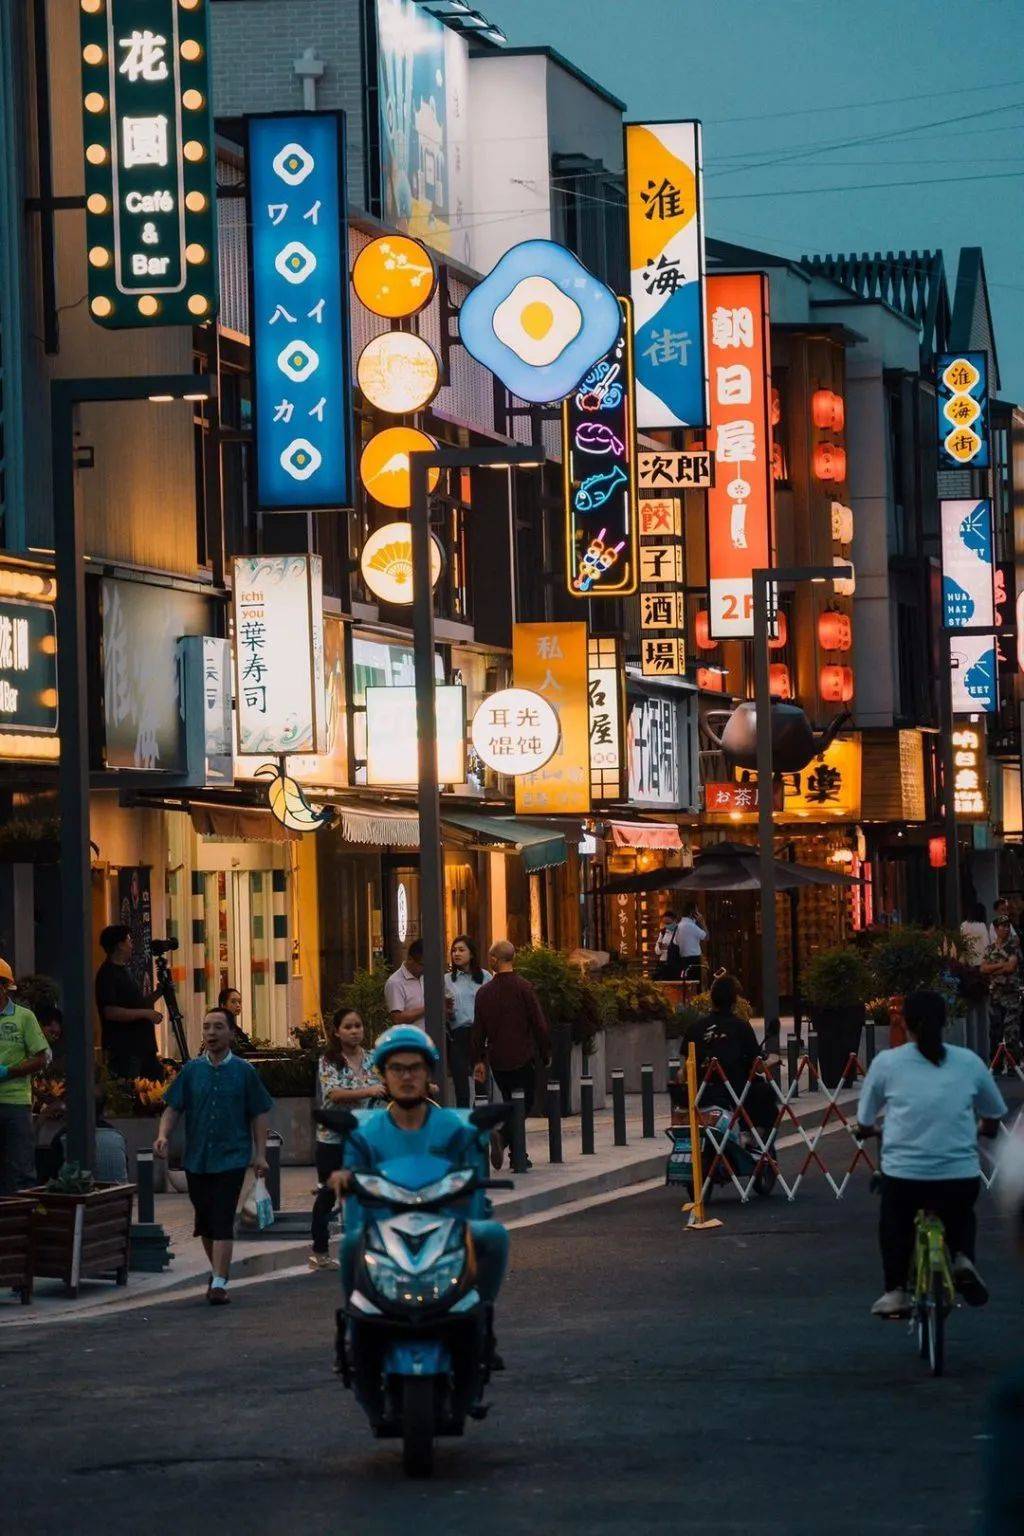 中国各地流行高仿"日本街",不出国游日本?对此你有何感想?